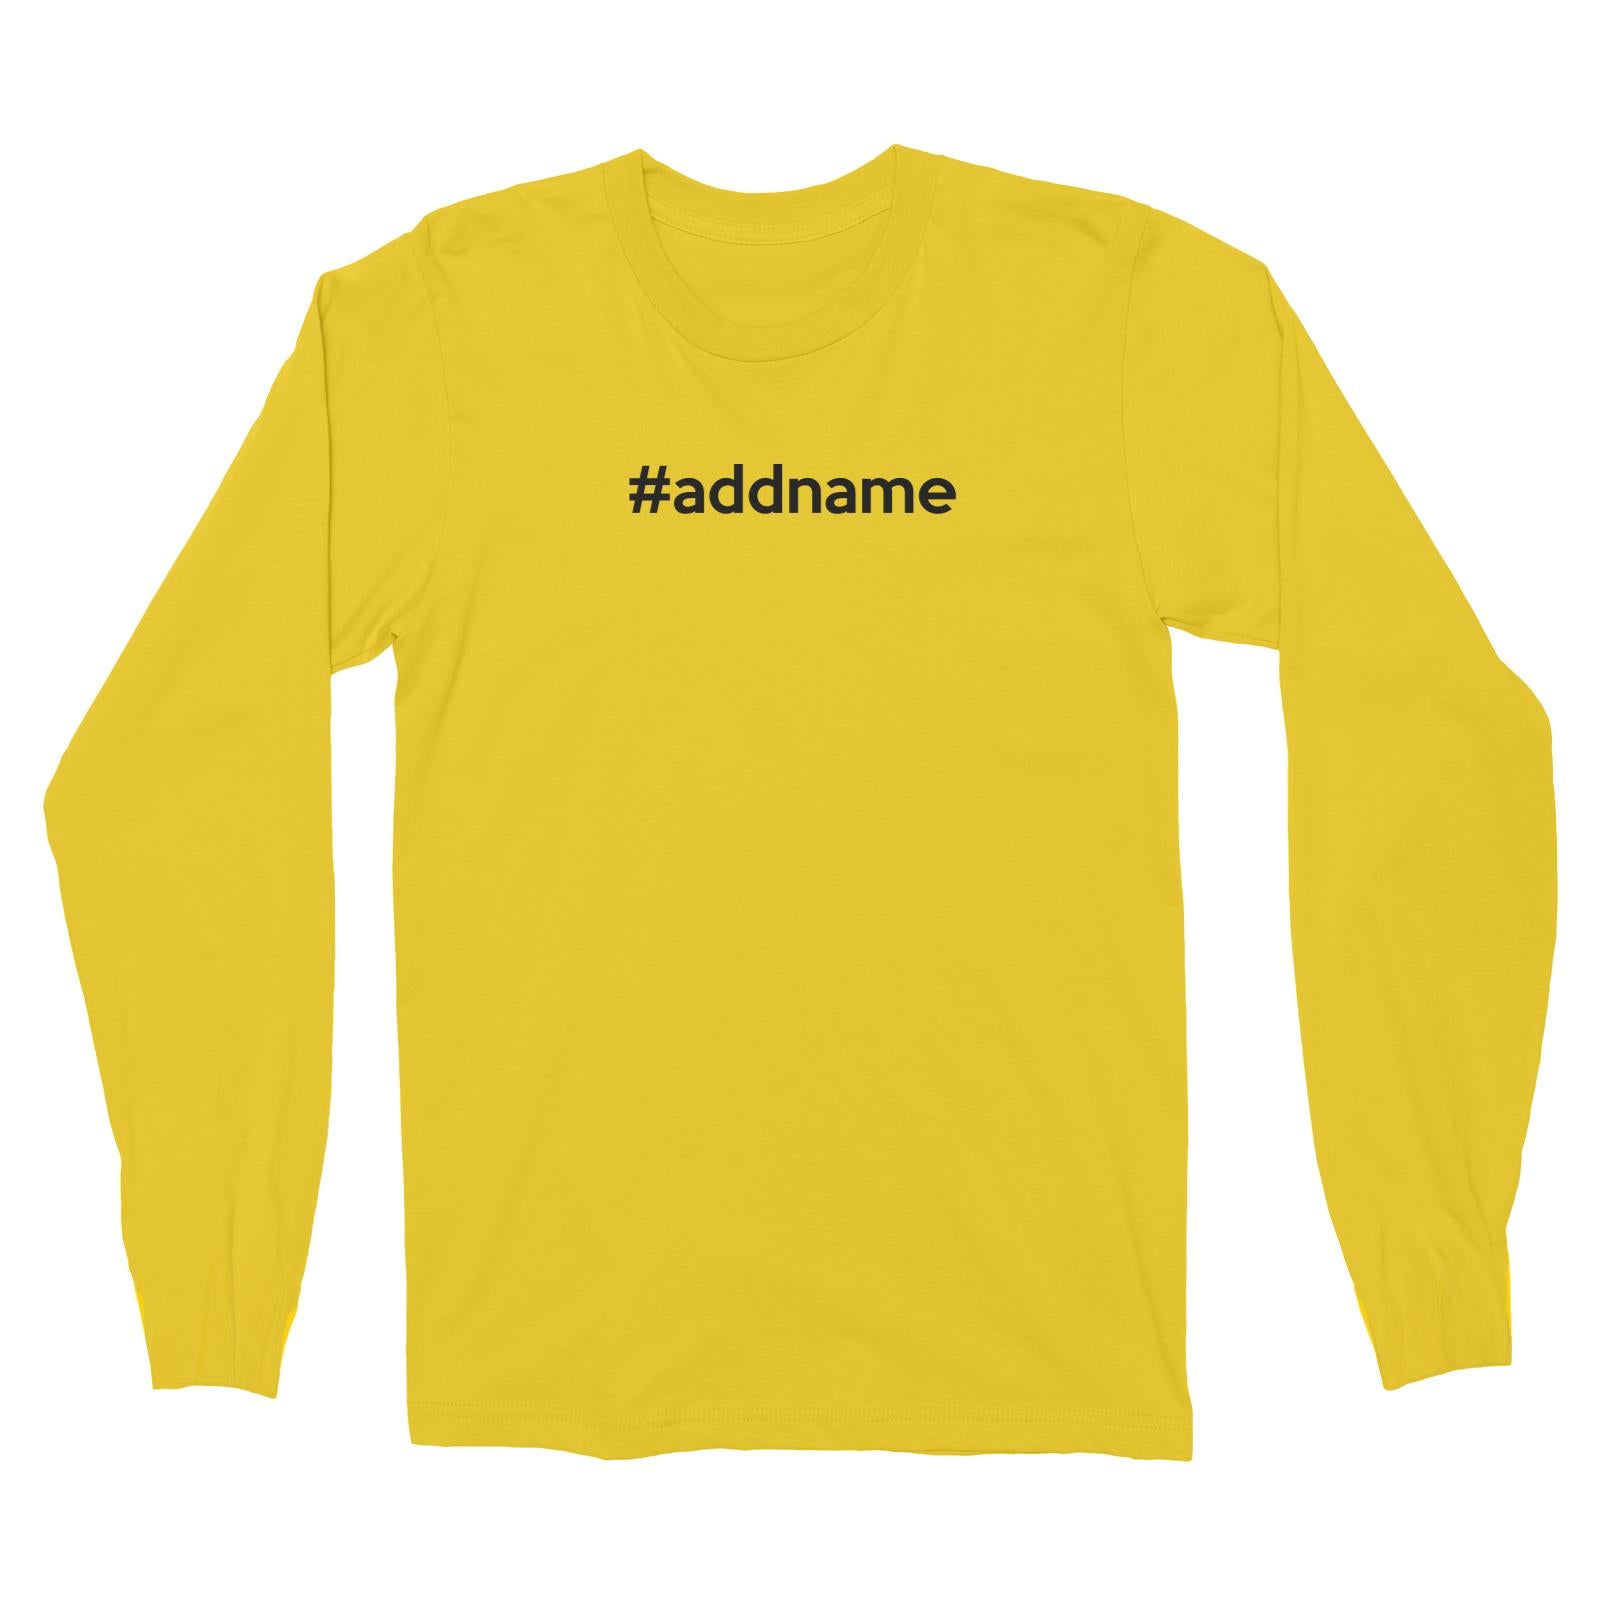 Hashtag Addname Long Sleeve Unisex T-Shirt Basic Matching Family